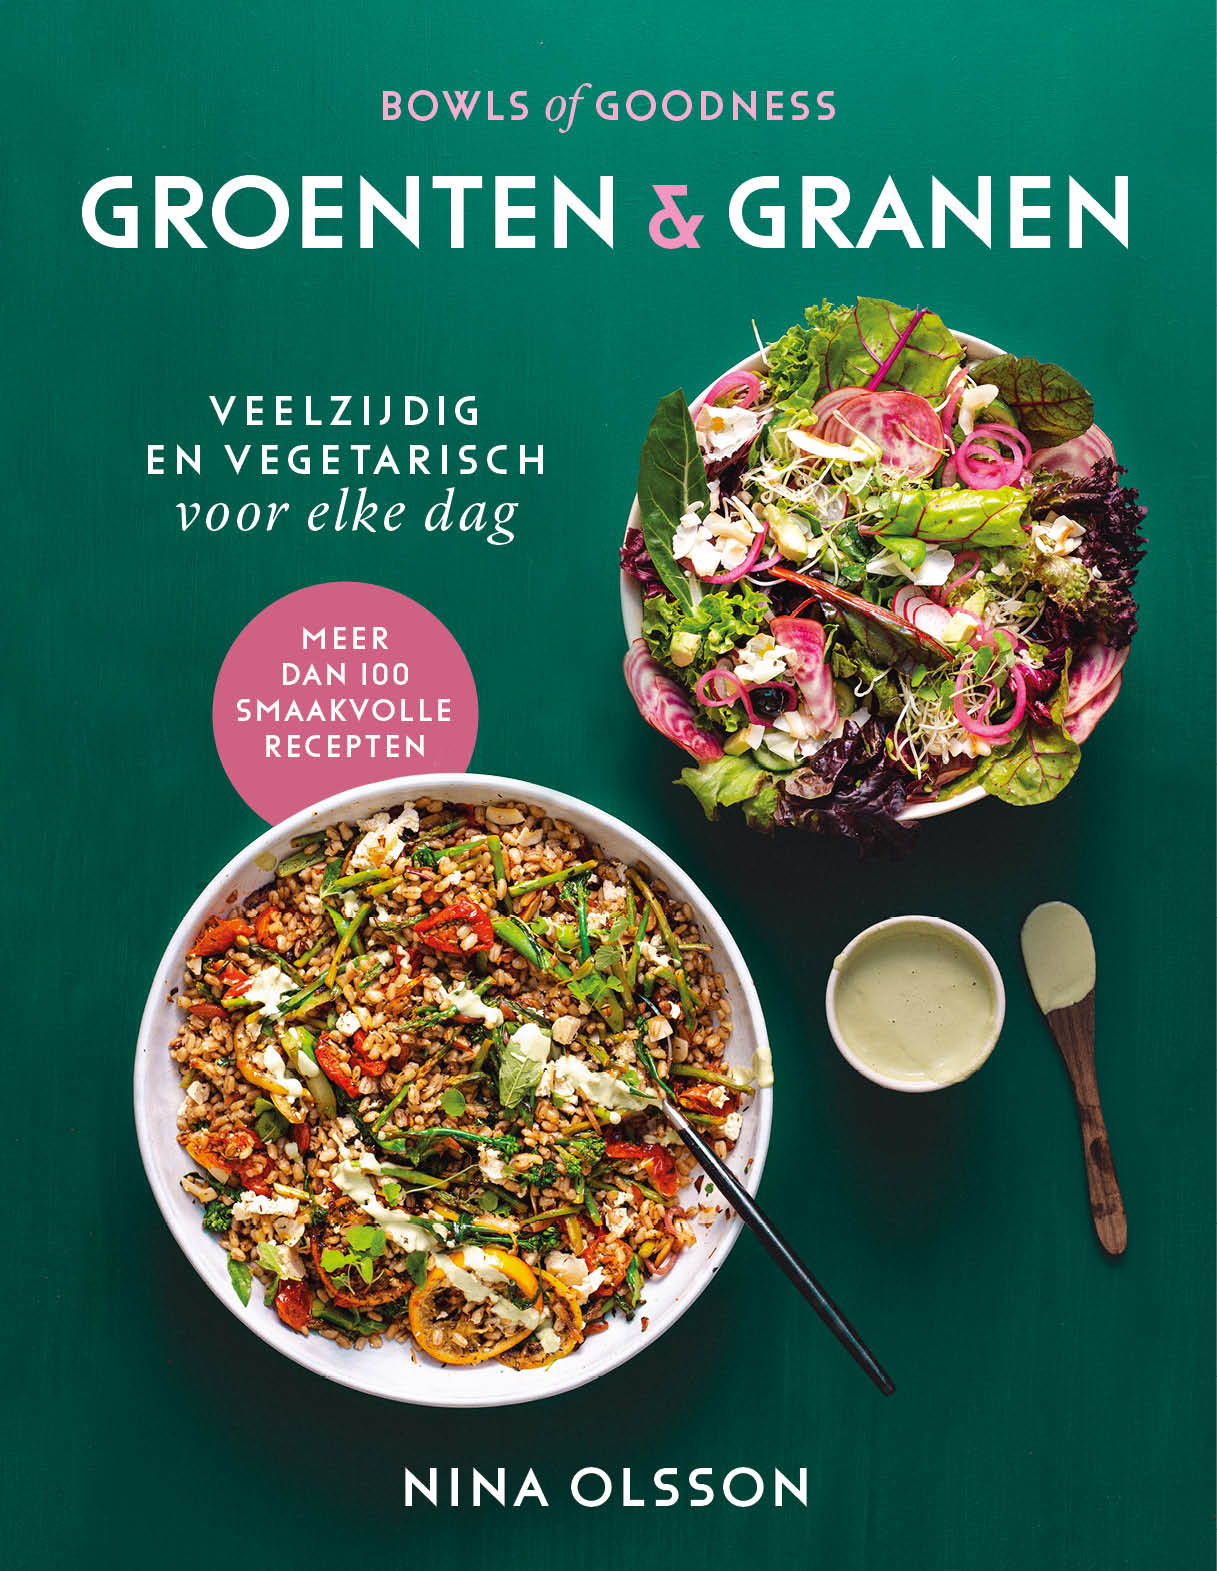 Bowls of goodness 2 -   Groenten & Granen